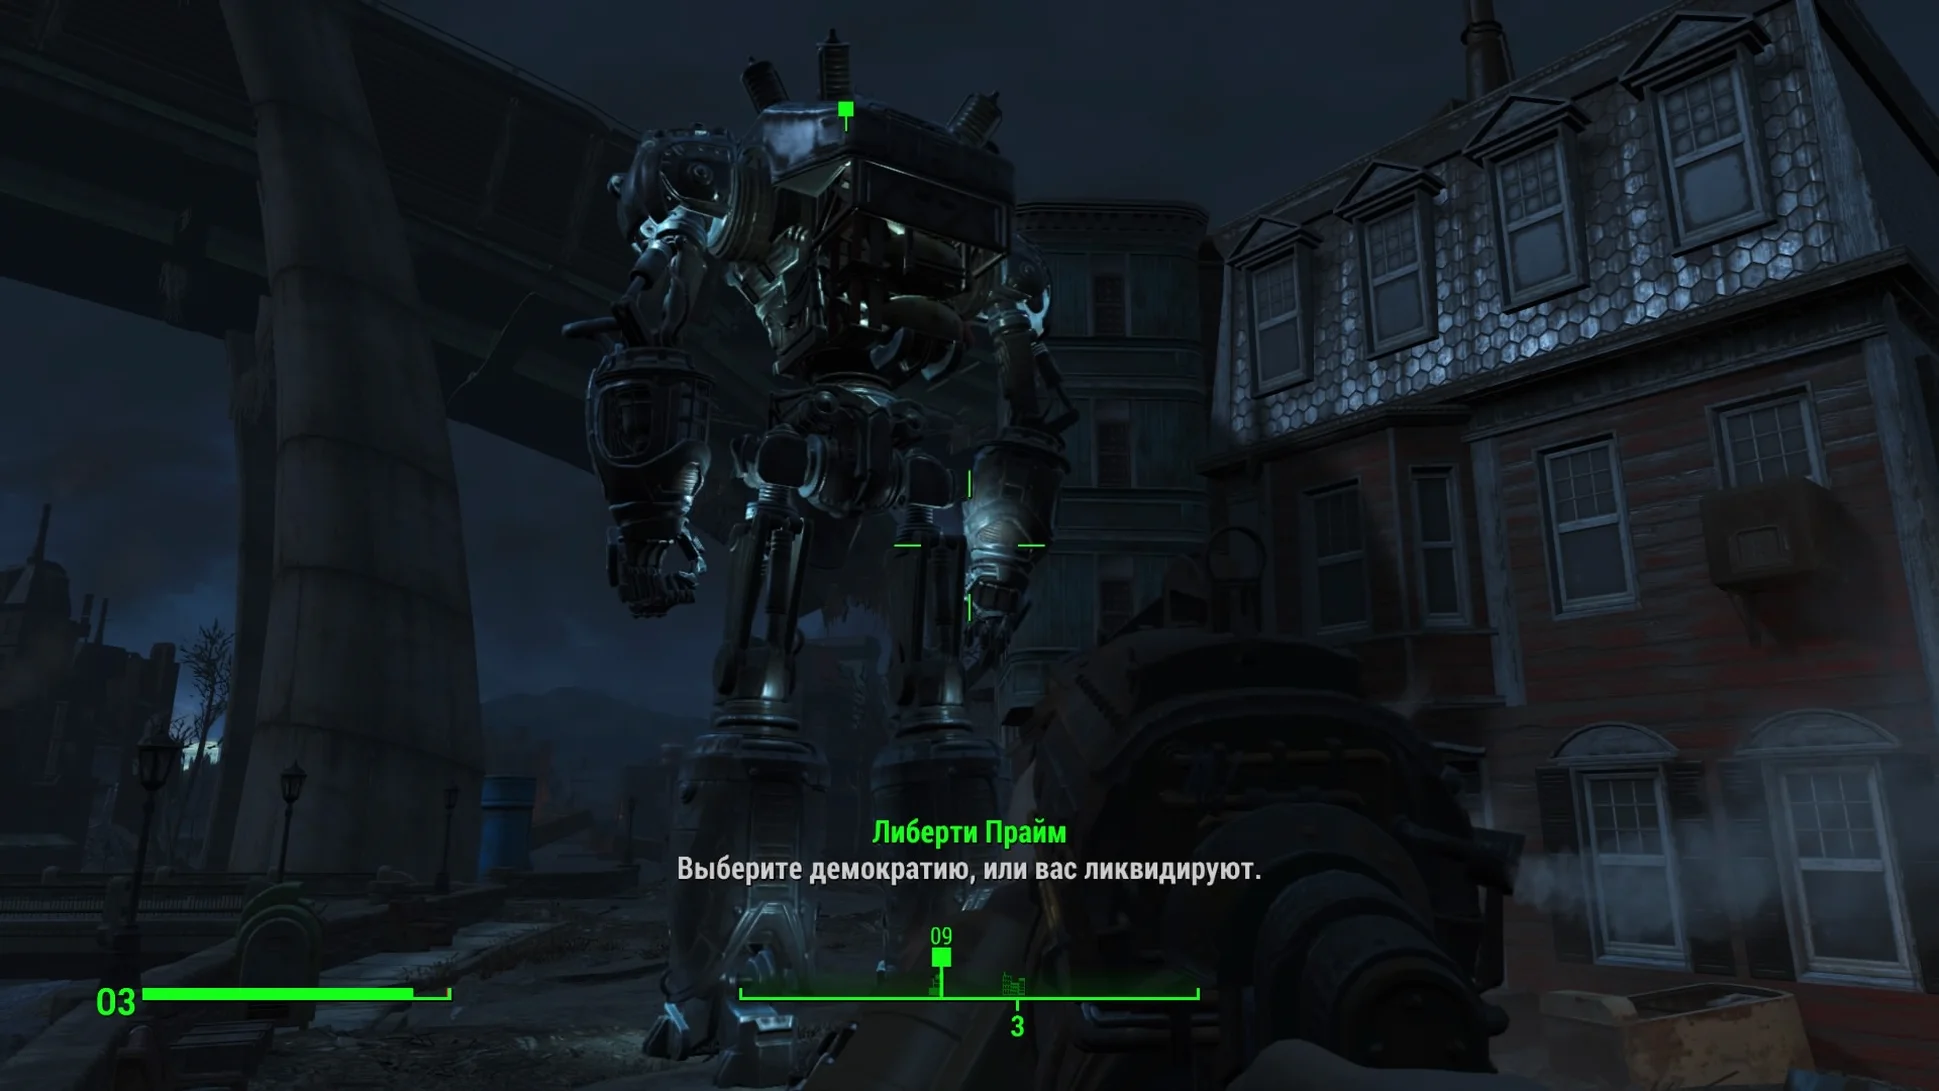 Скриншот Fallout 4: Либерти Прайм.